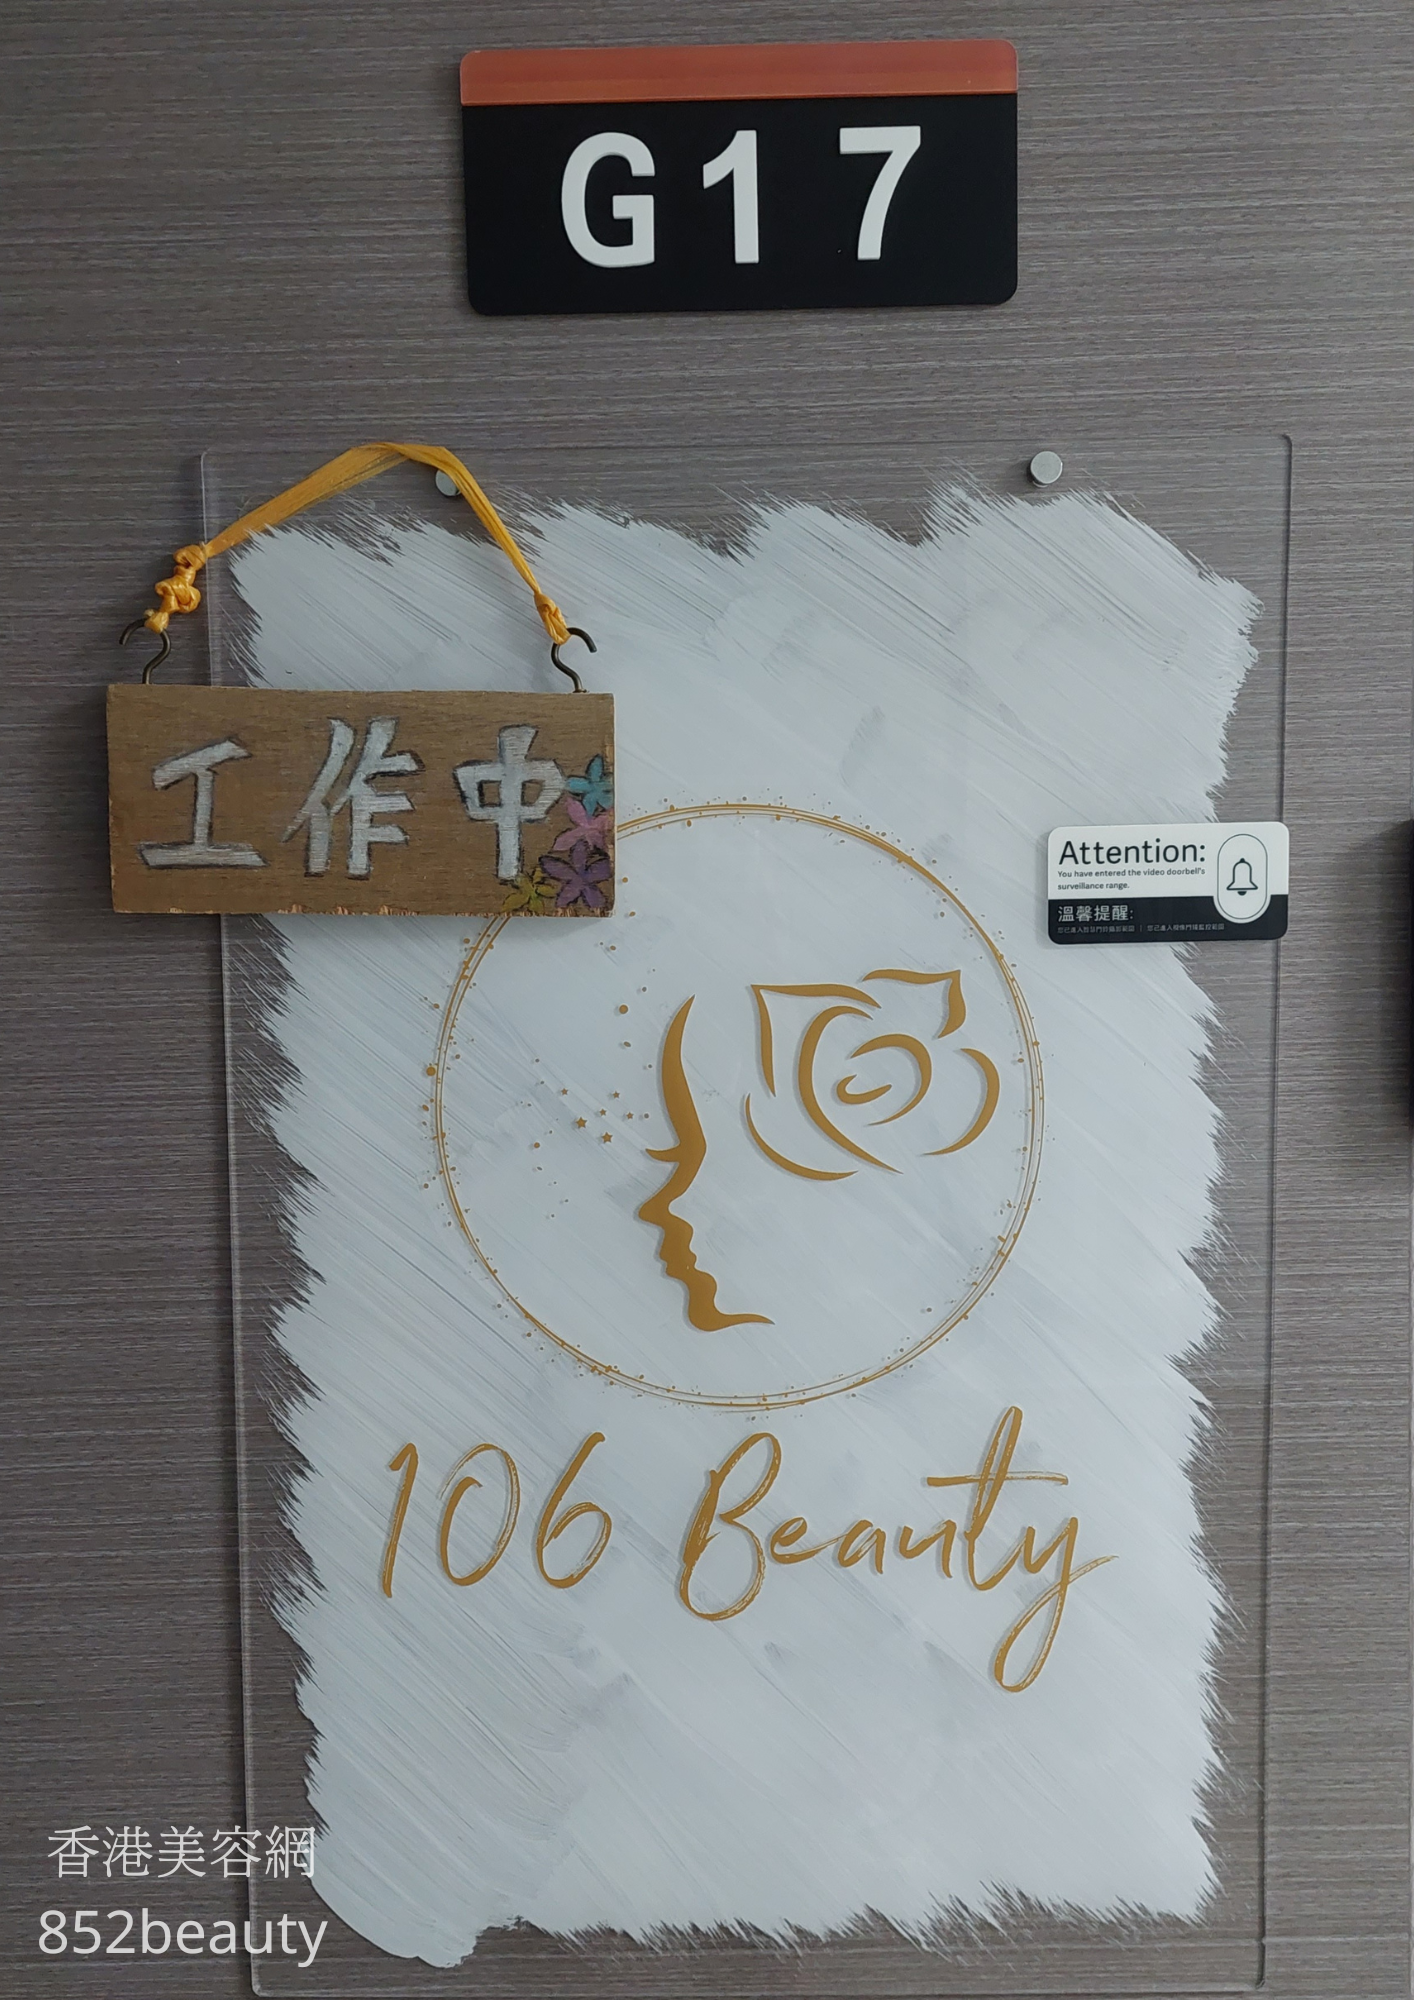 修眉/眼睫毛: 106 Beauty